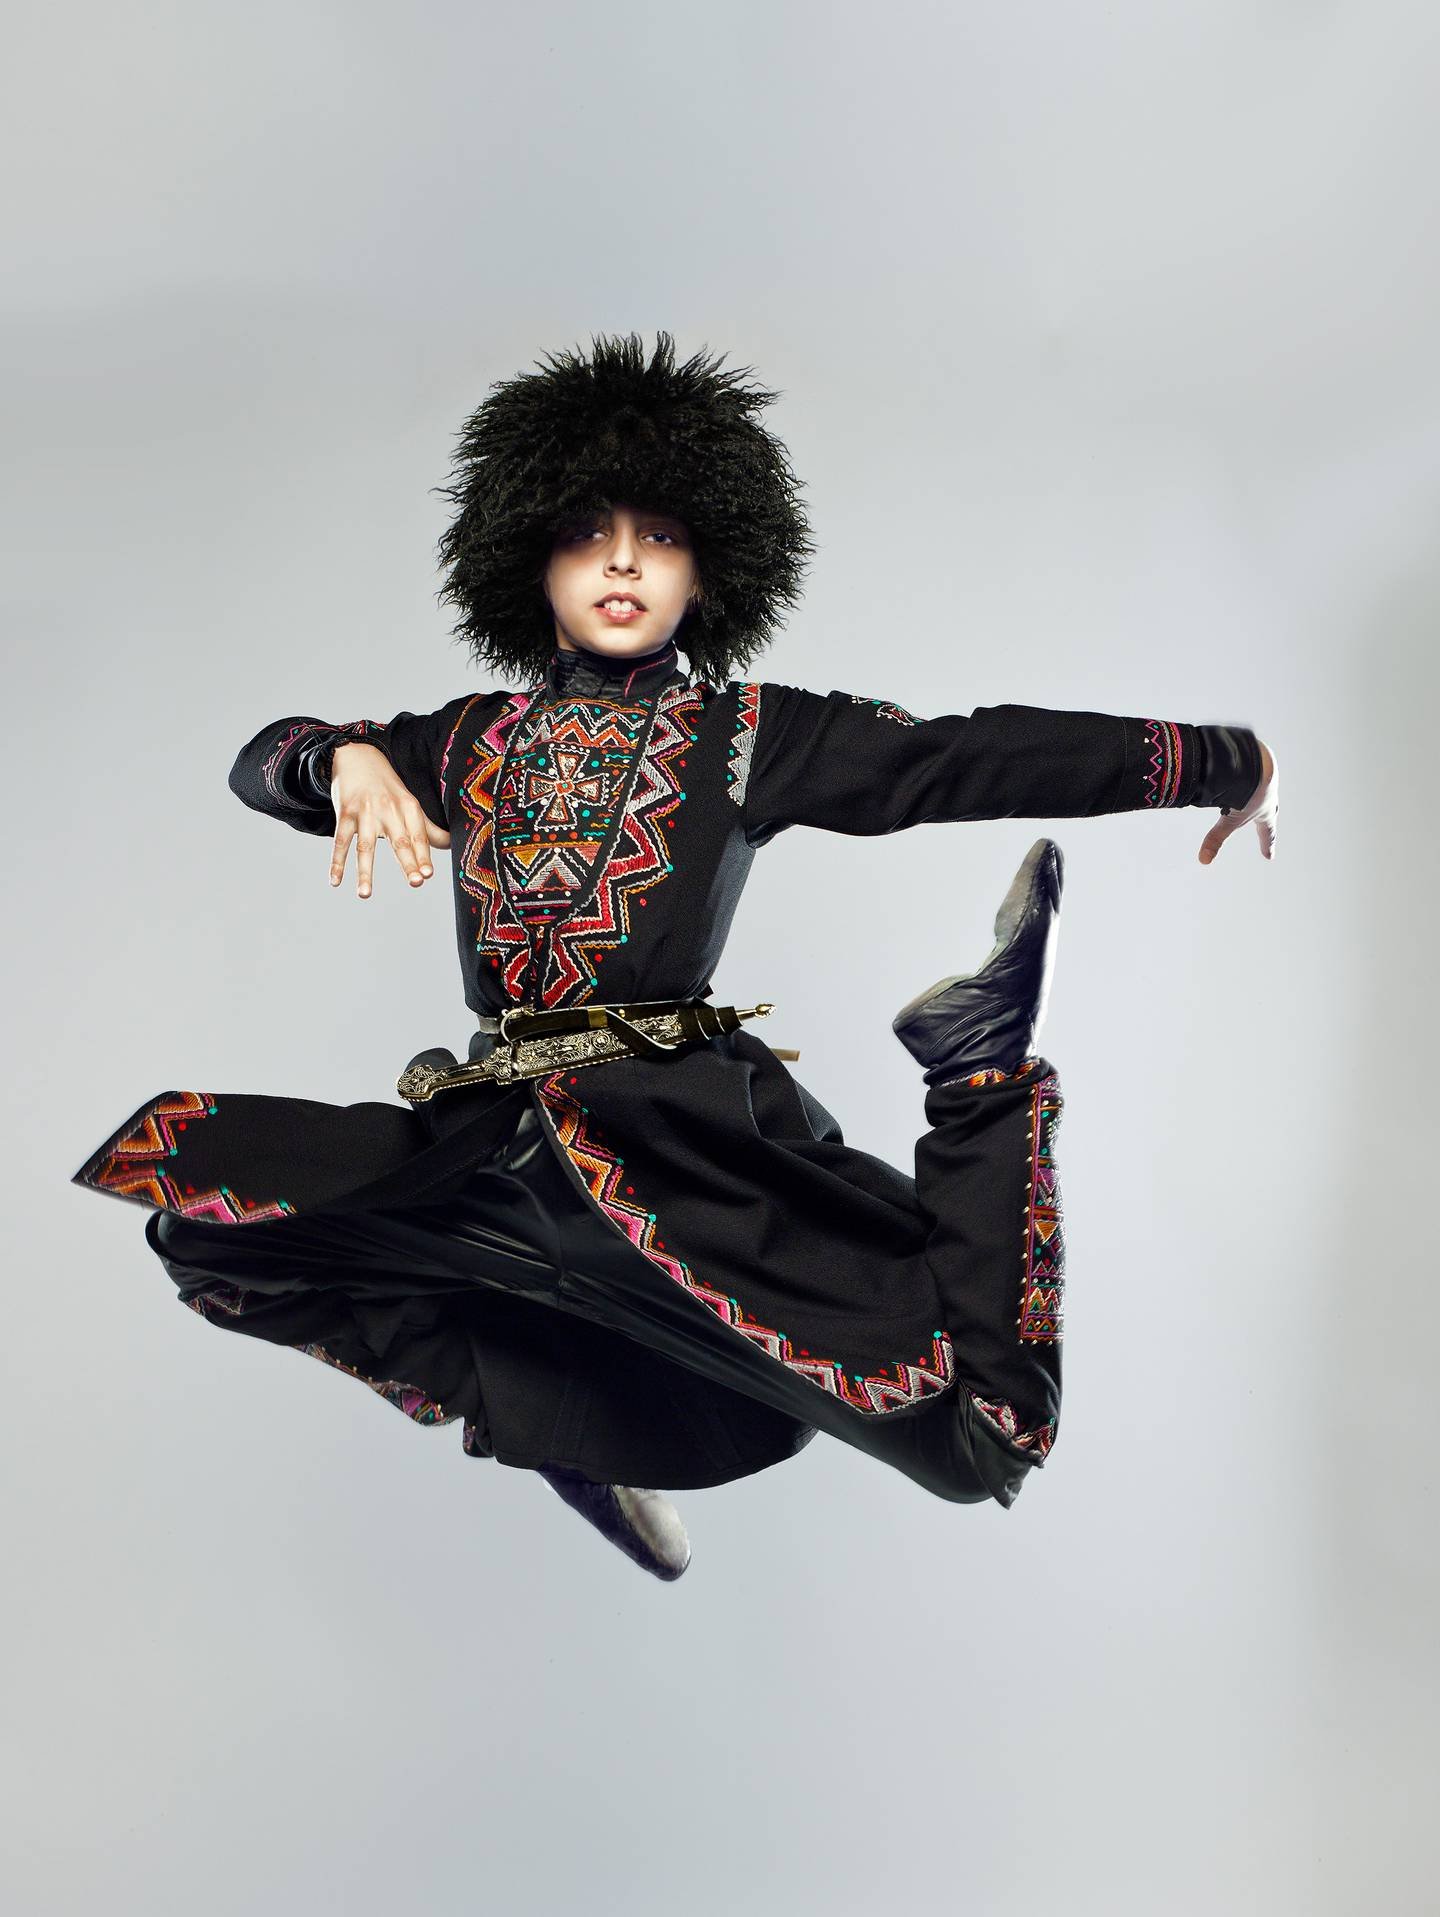 Танцующий грузин. Грузинский танцевальный костюм. Костюм для лезгинки. Грузинский национальный костюм для мальчика. Кавказские танцы дети.